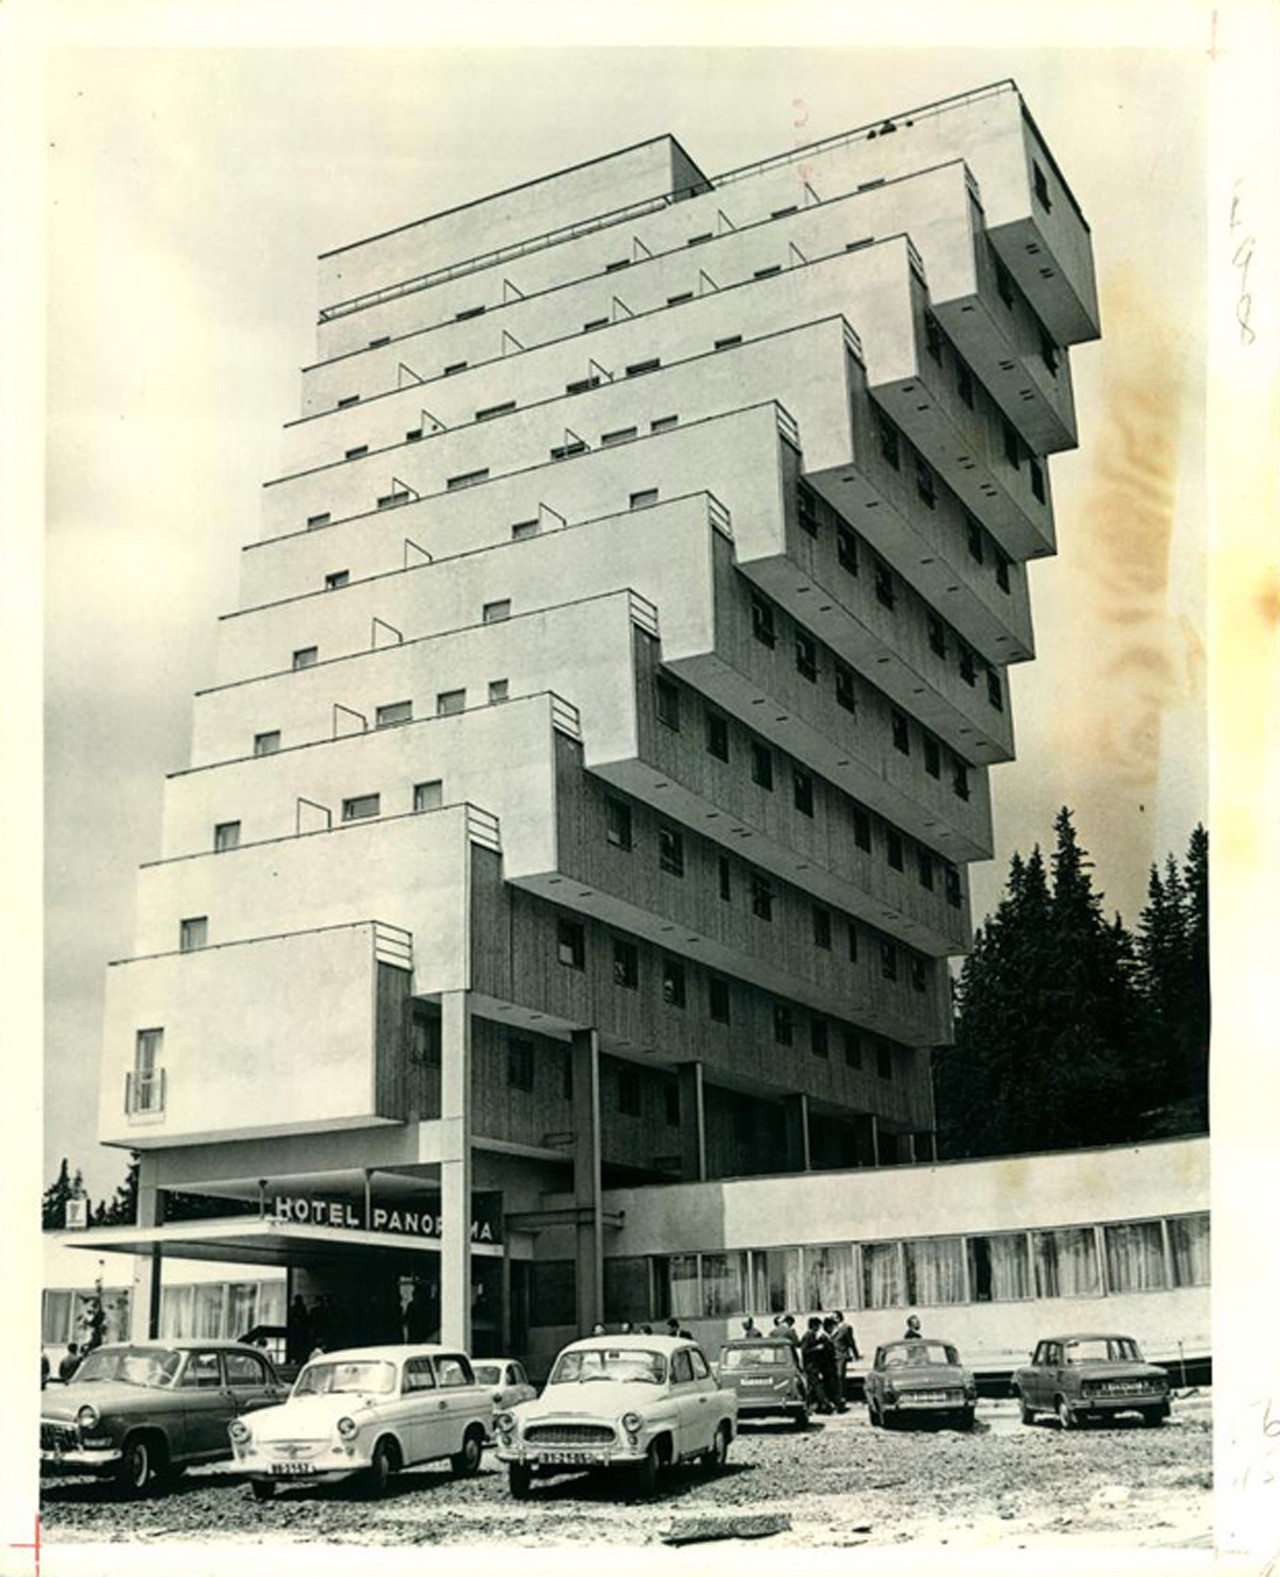 Hotel Panoroma, Slovakya, 1970. 1920-30'lu yılların konstrüktüvist etkilerini de görebileceğimiz bu örnek, döneminin mimarlık anlayışının başat örneklerinden olmuştur. Yapı, dinamik kütlesinin yanında brütalist kimliğini de belirleyici bir şekilde dışa vurmaktadır. Fotoğraf: thisbrutalhouse.com 